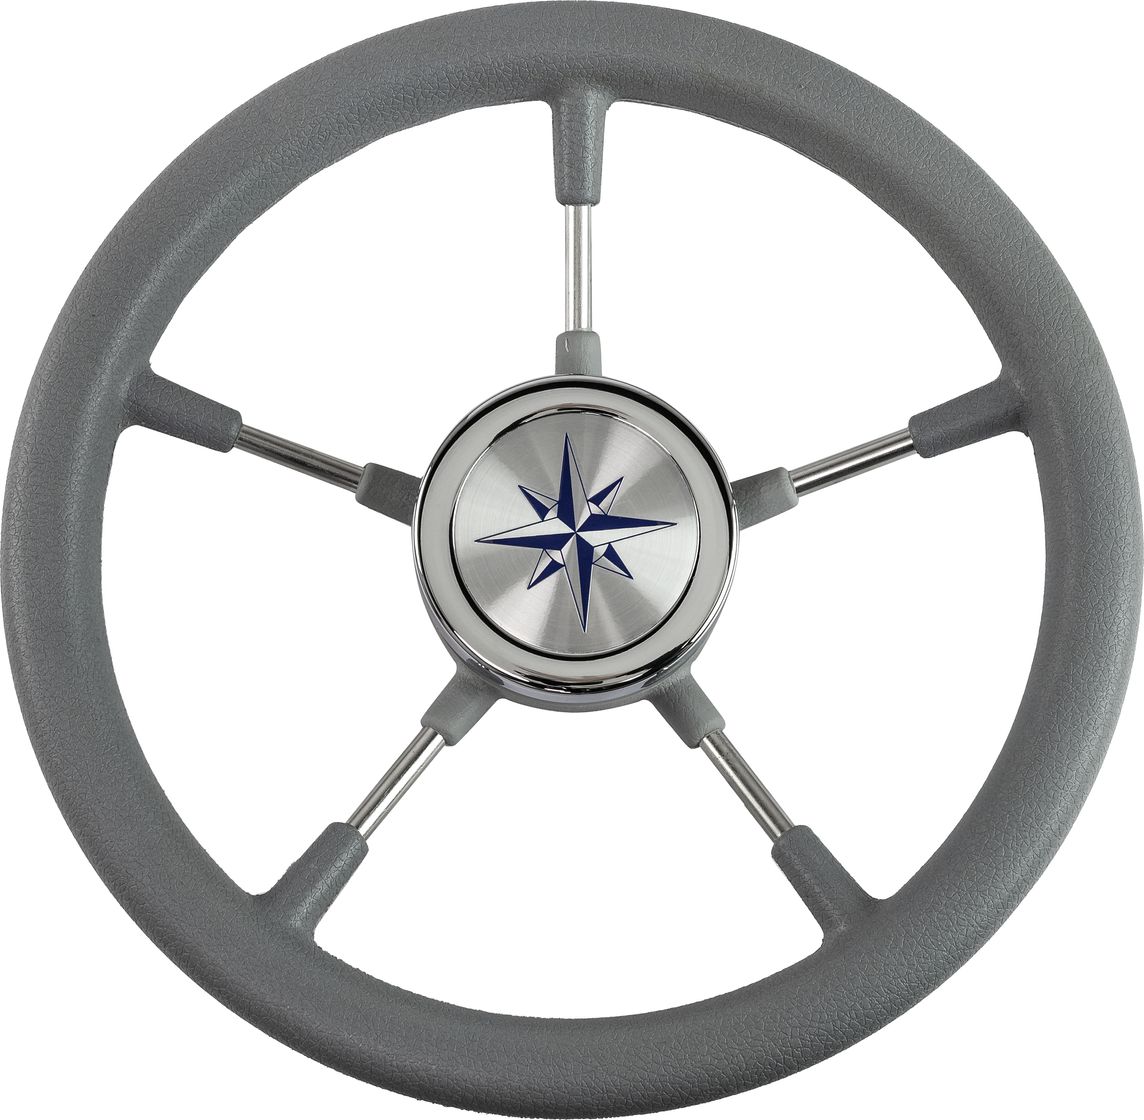 Рулевое колесо RIVA RSL обод серый, спицы серебряные д. 320 мм VN732022-03